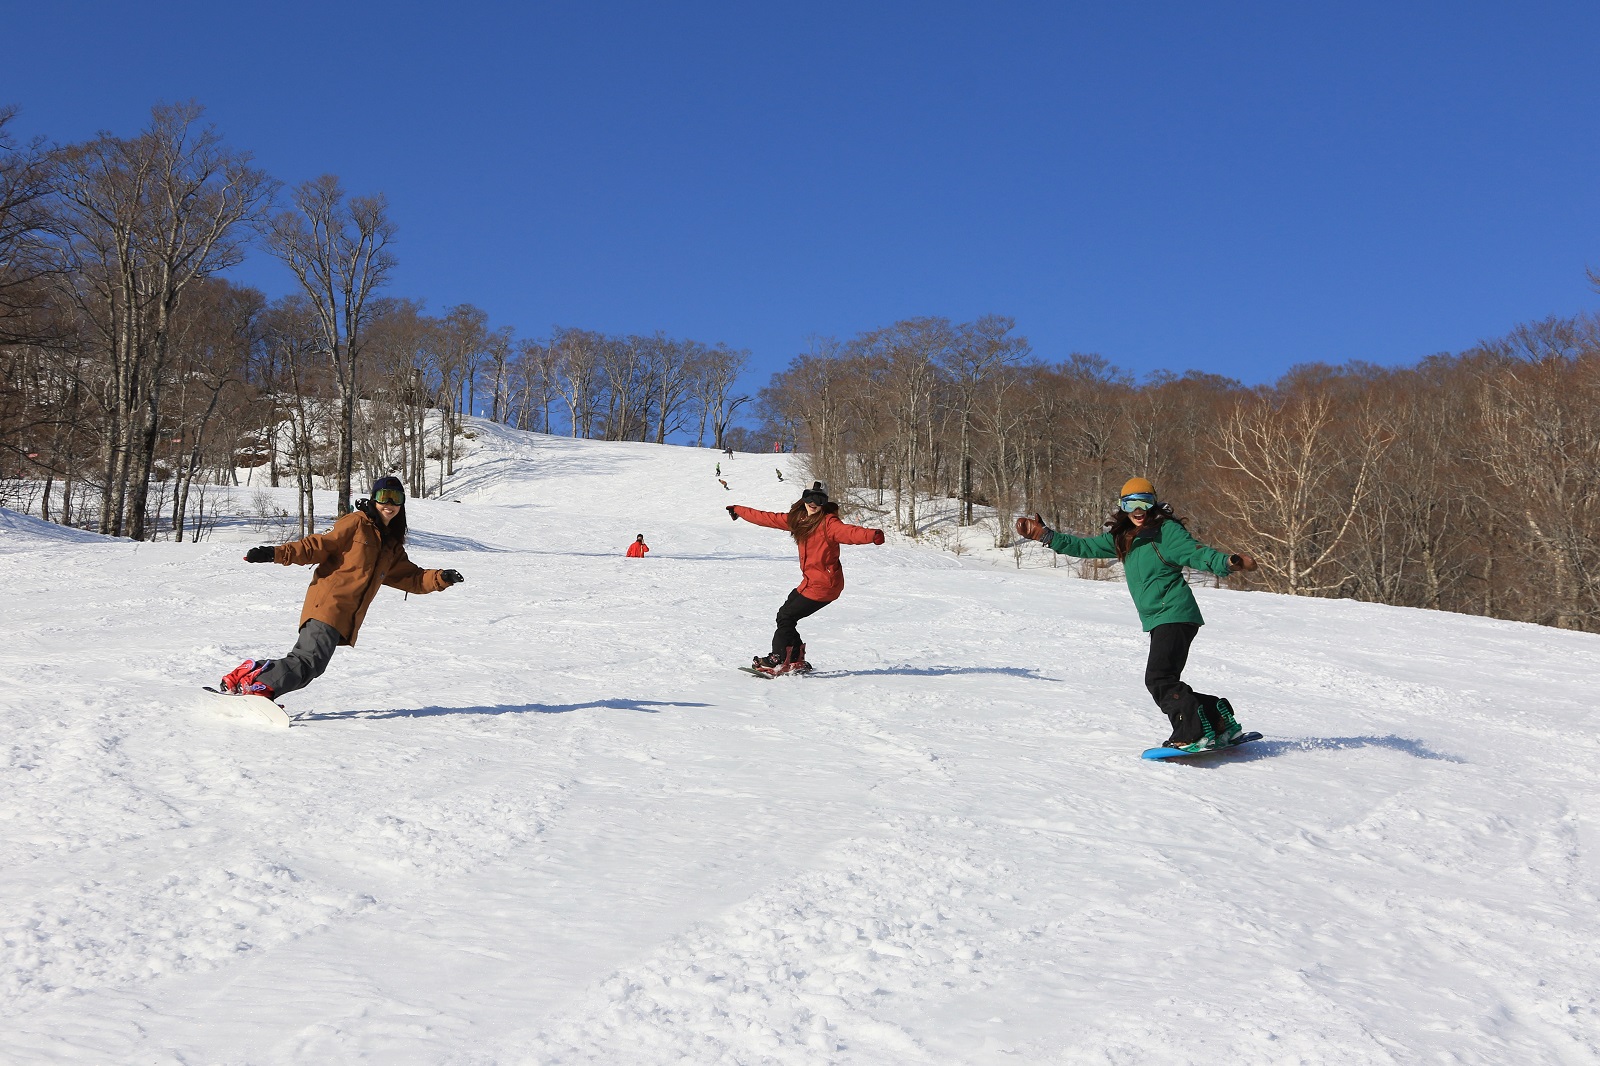 群馬県 たんばらスキーパーク 3月28日より春スキー営業を開始 東急リゾーツ ステイ株式会社のプレスリリース